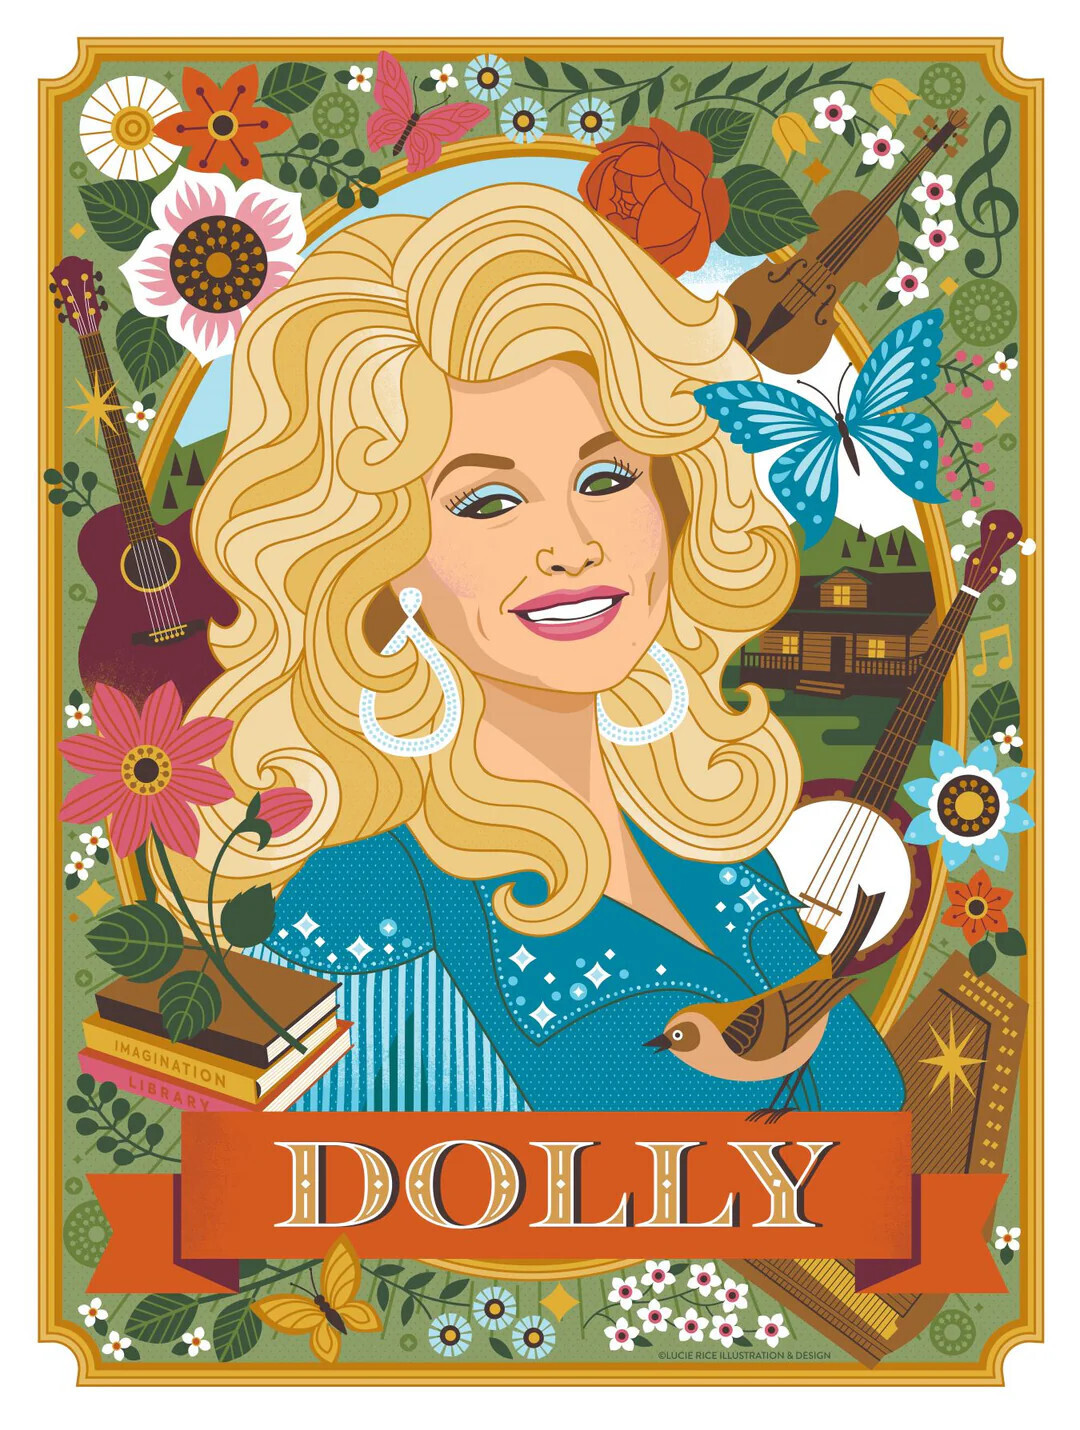 Dolly